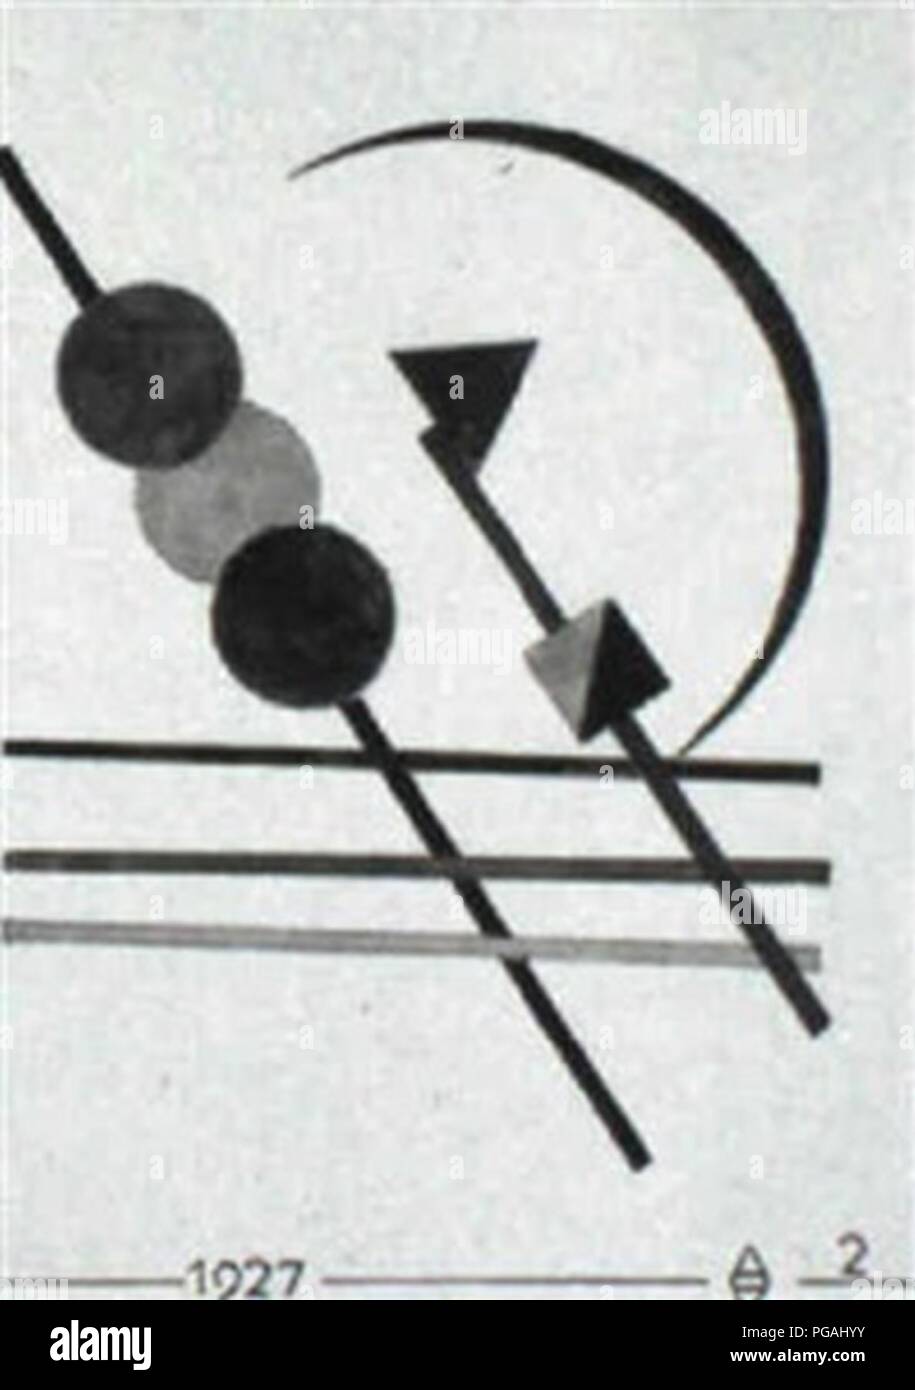 August Agatz Geometrische Komposition mit drei Kreisen. Stock Photo